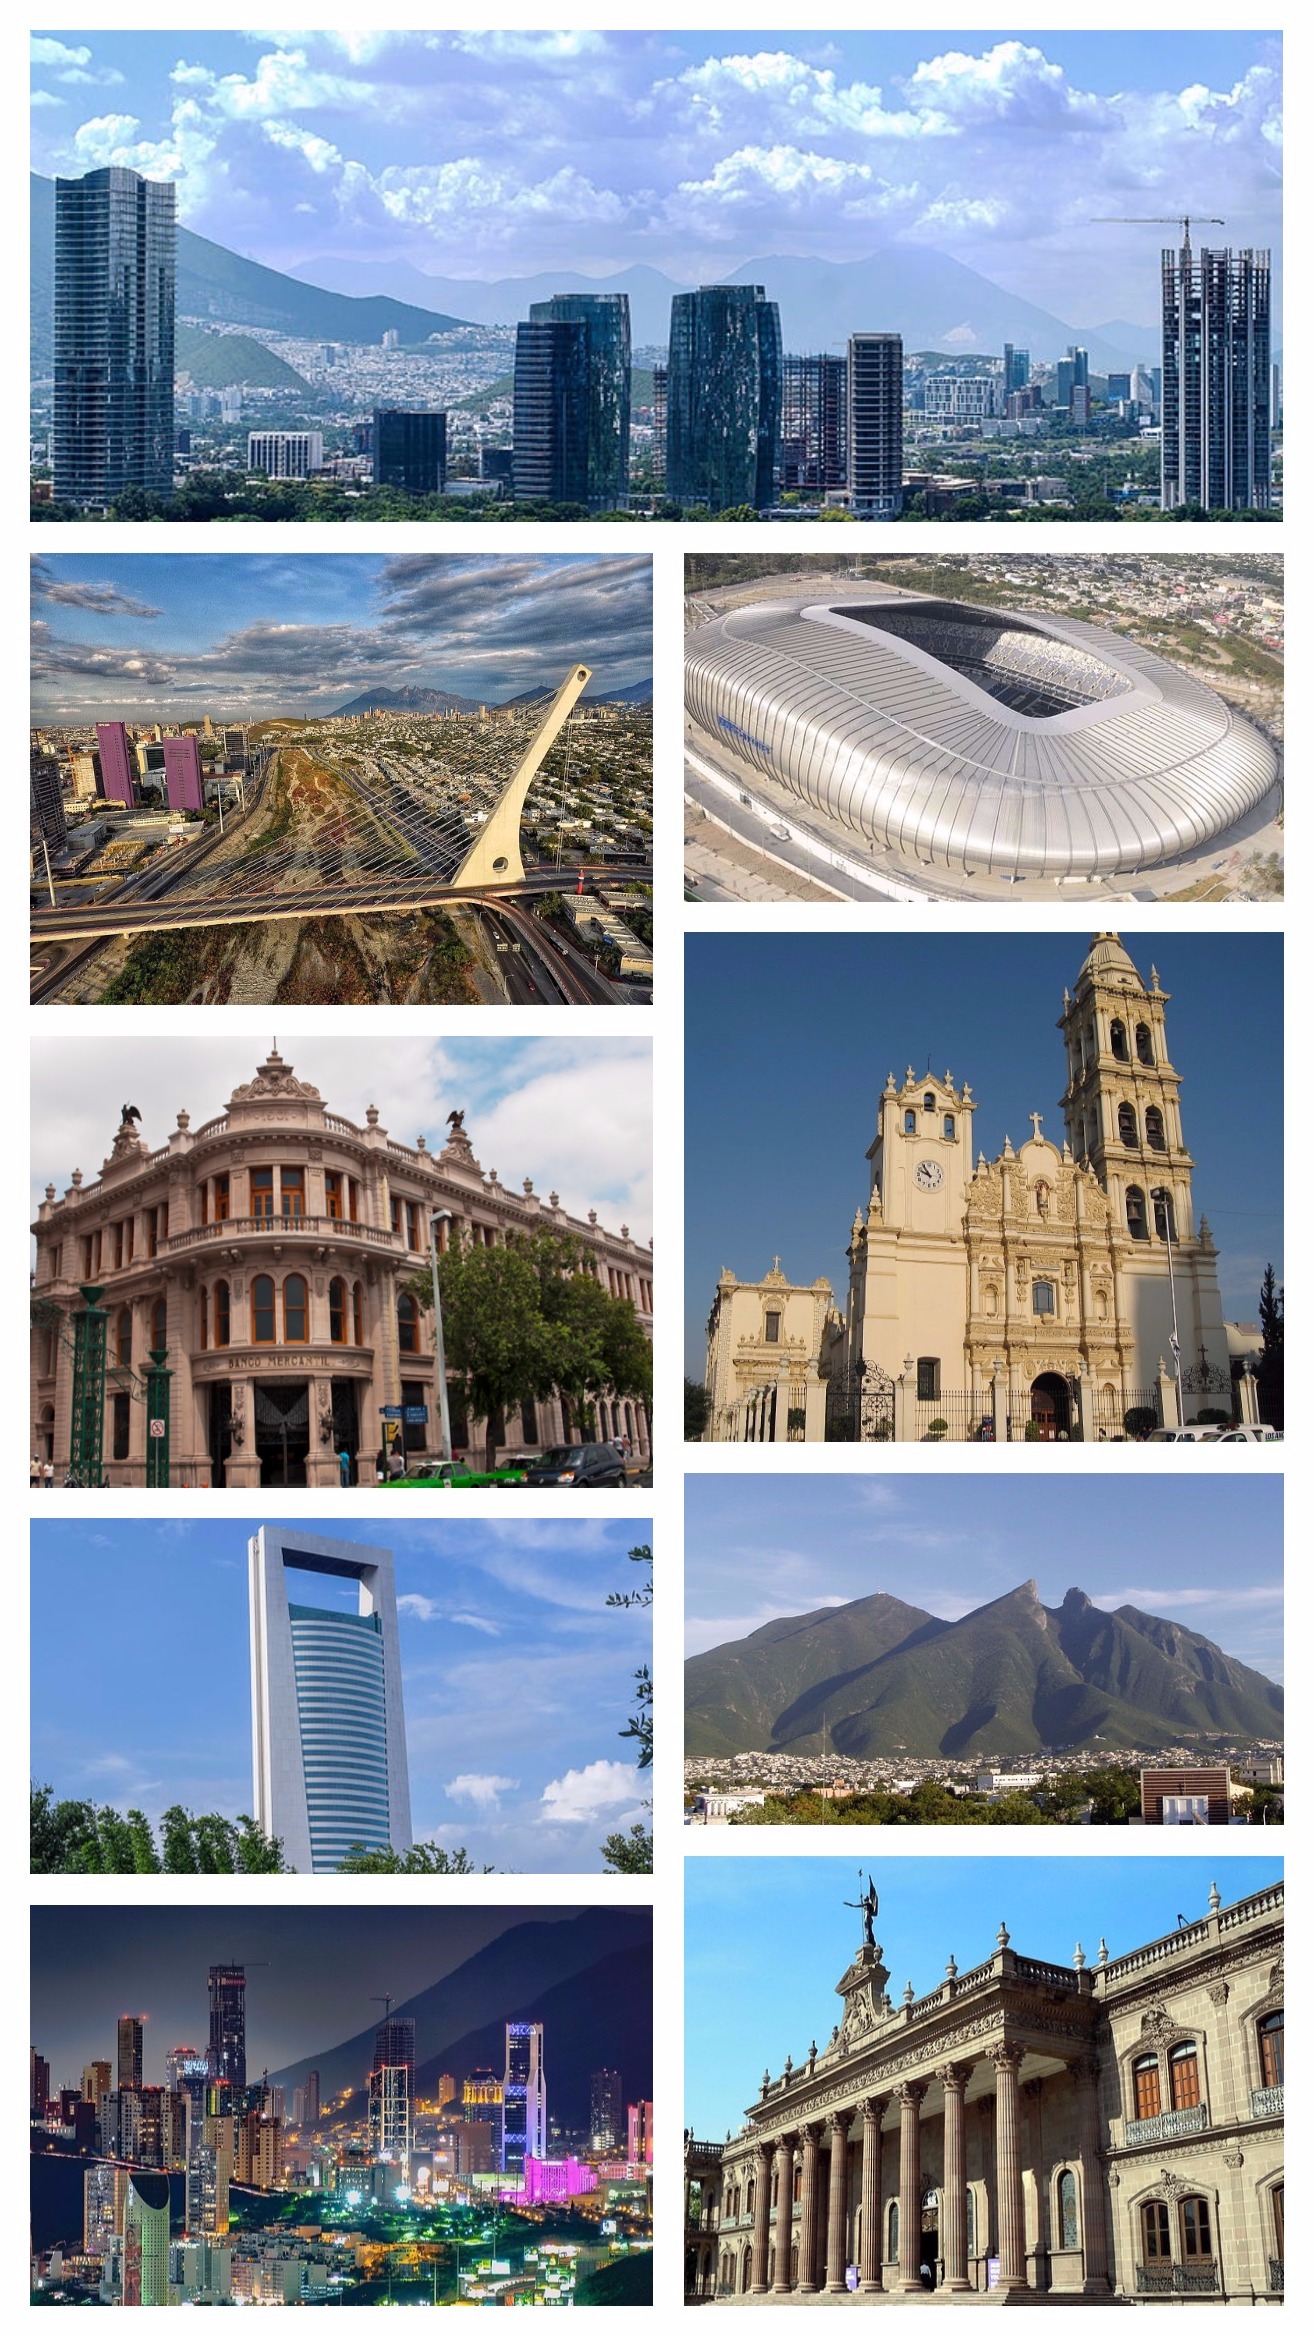 MonterreyCollage.jpg